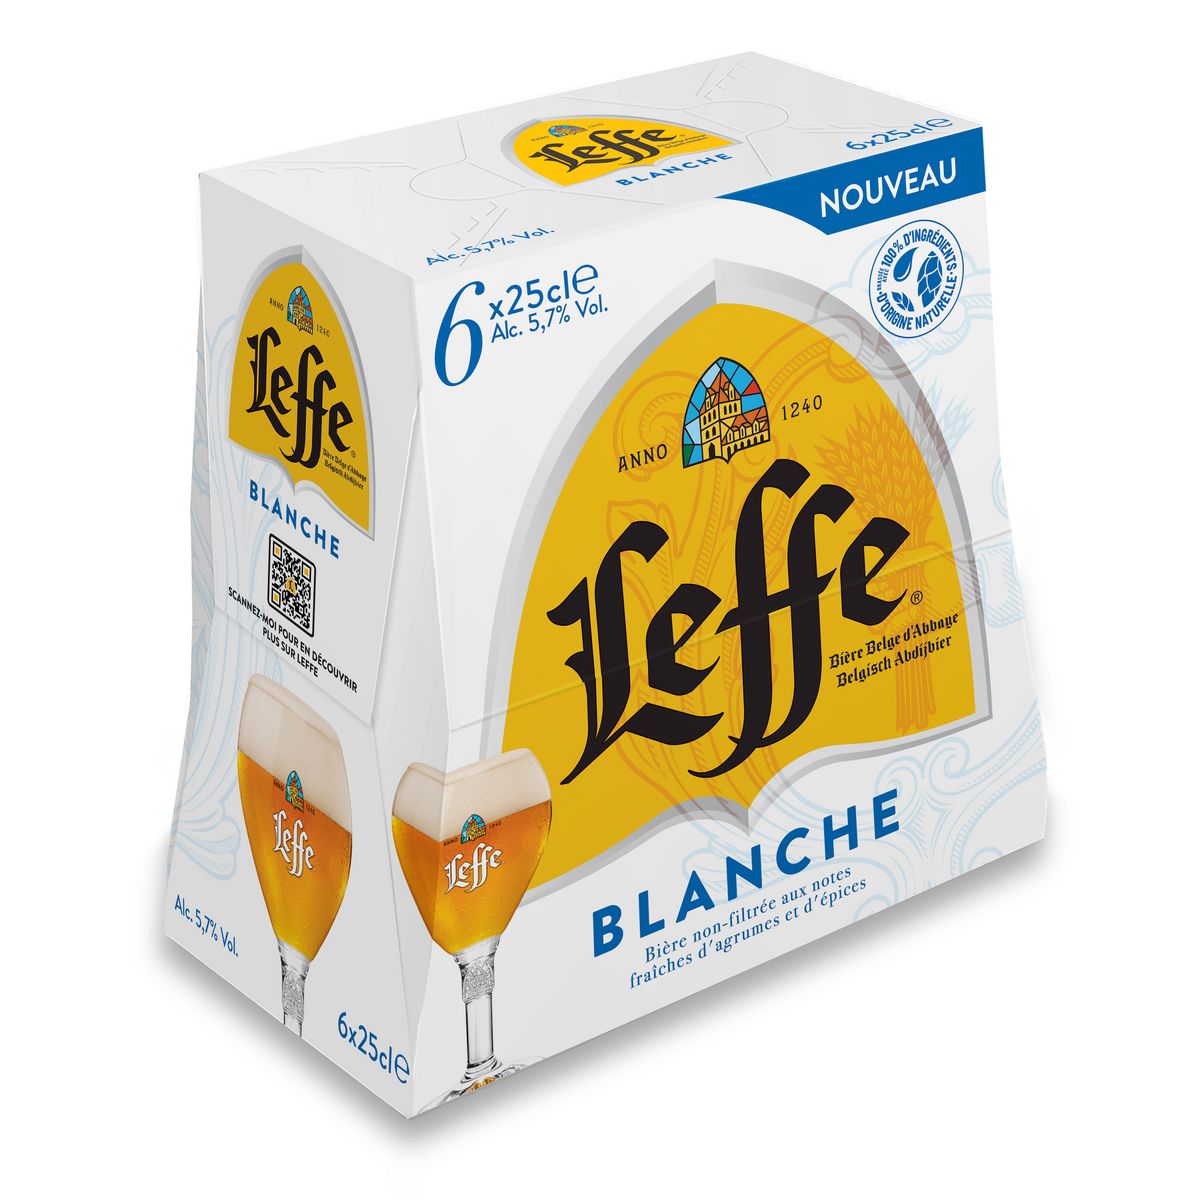 LEFFE Bière blanche 5.7% bouteille 6x23cl